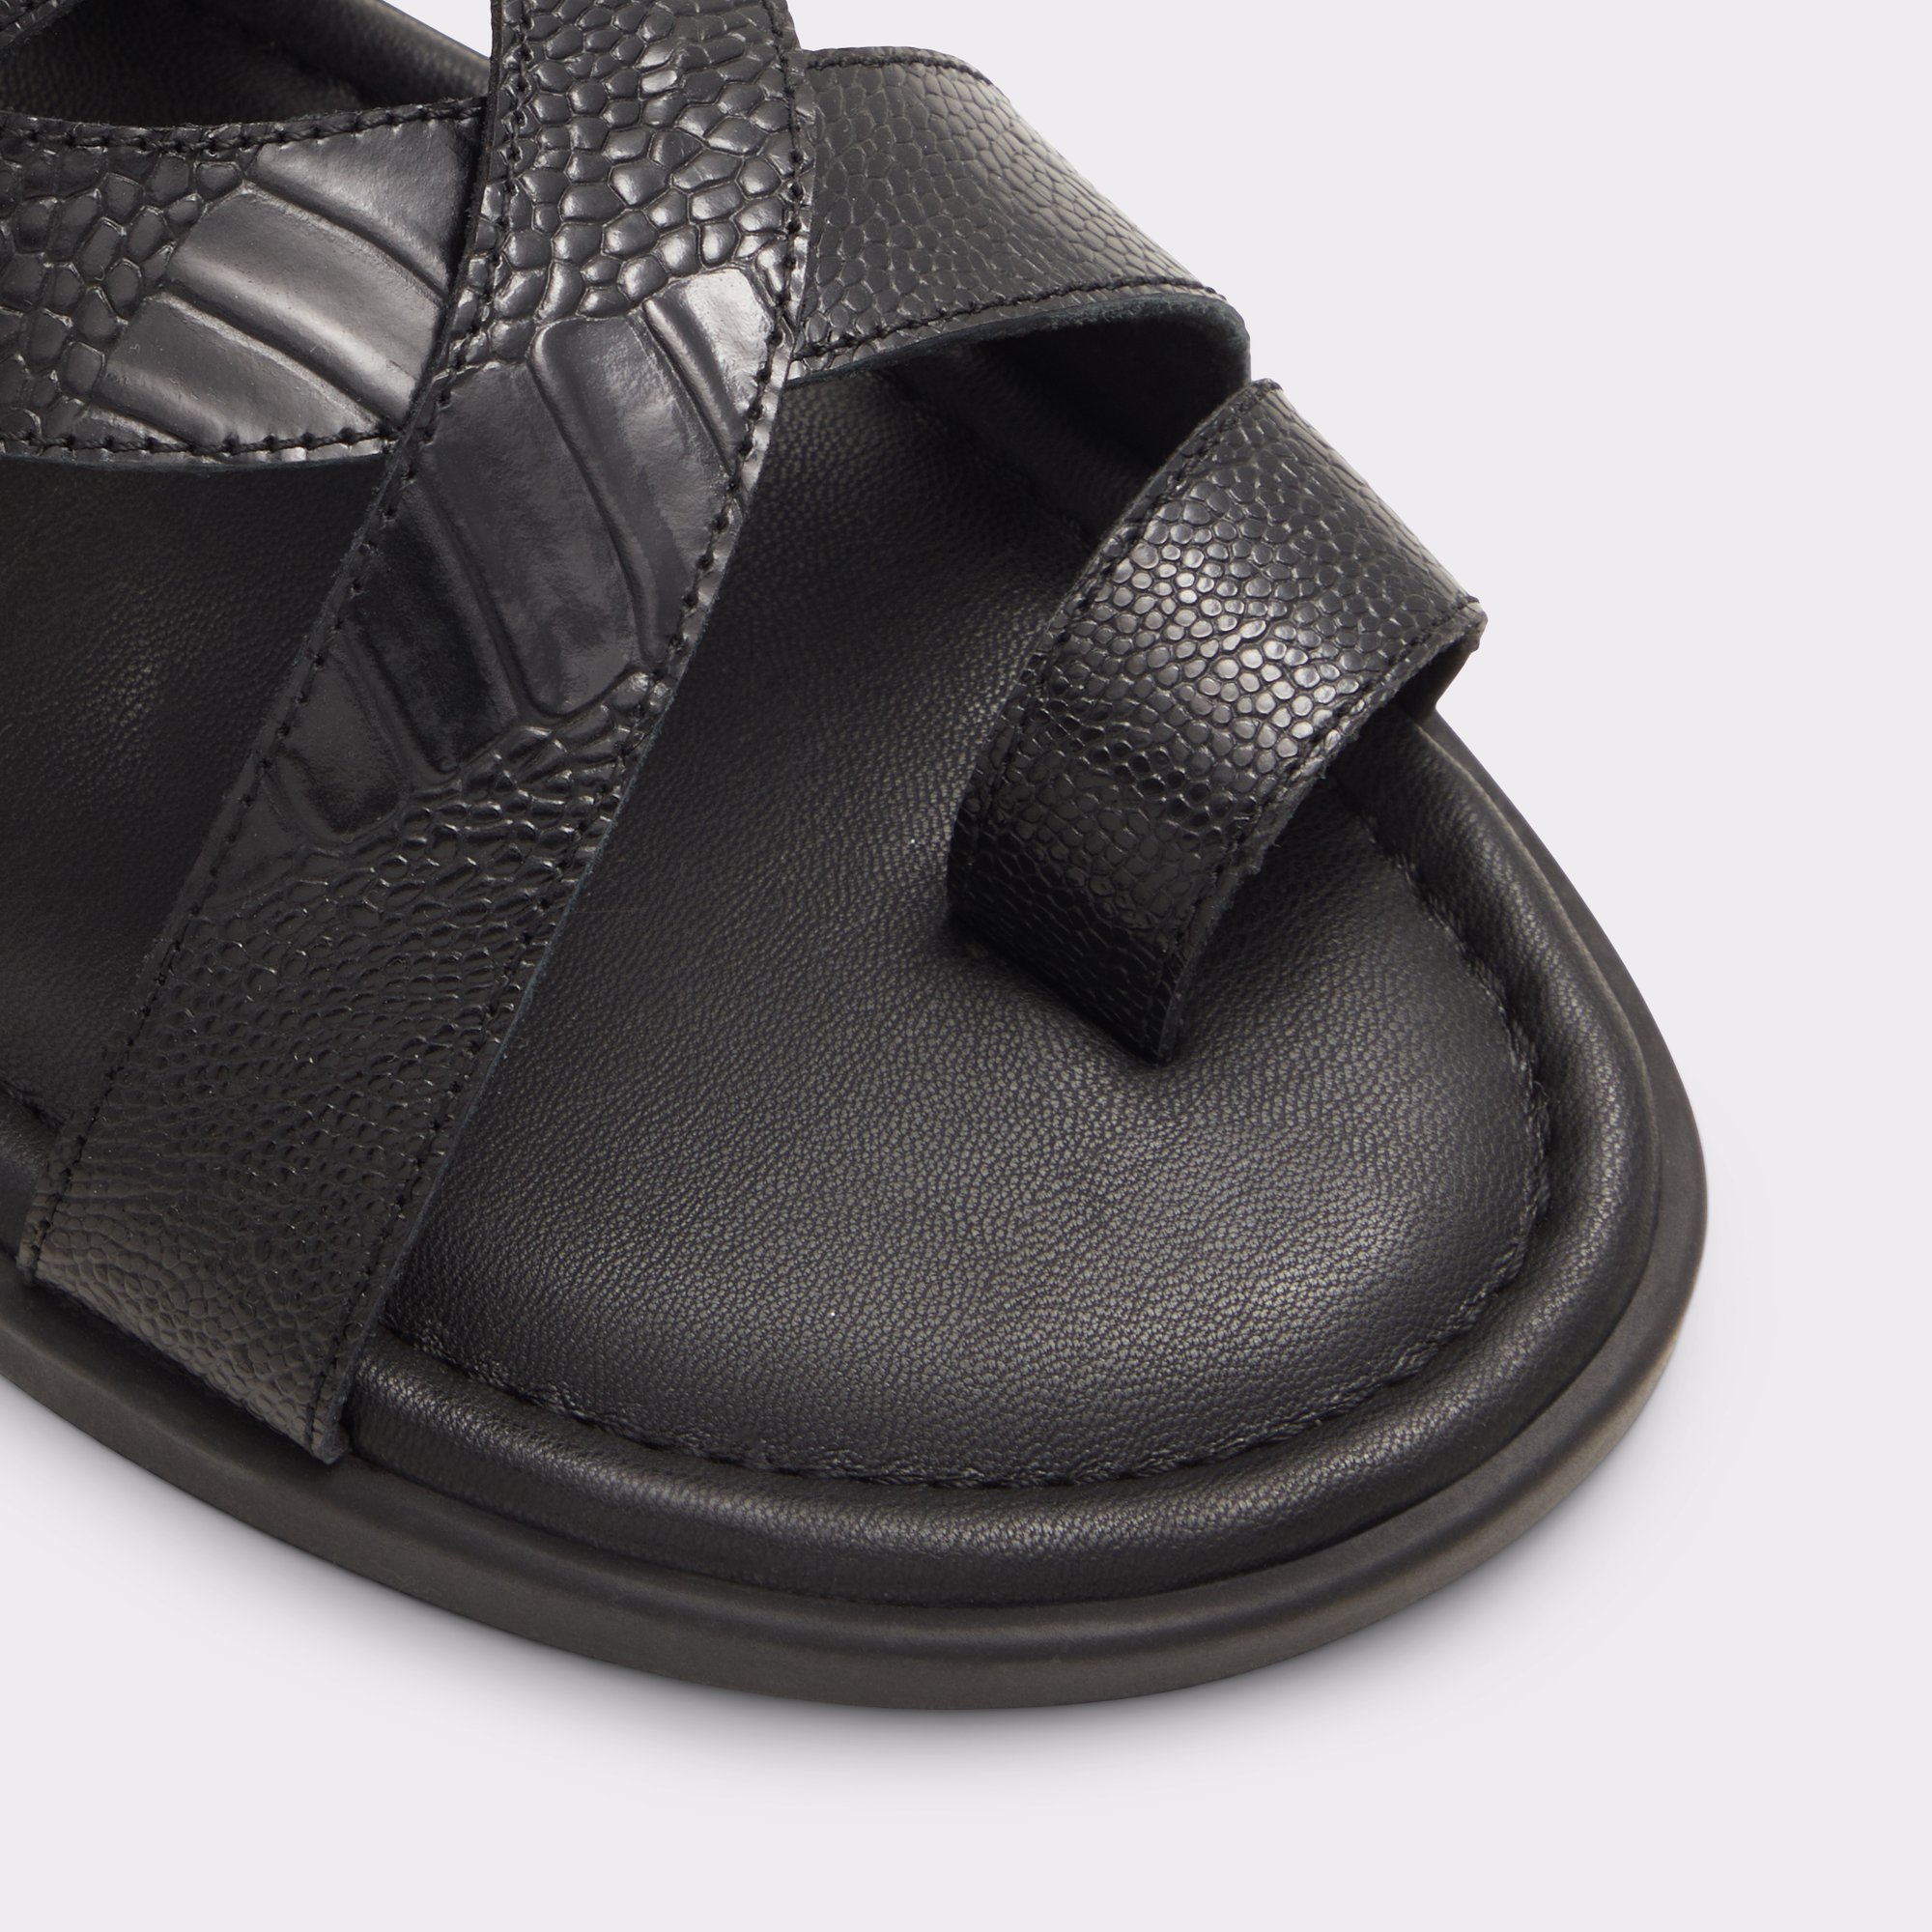 Zaino Black Men's Sandals & Slides | ALDO Canada